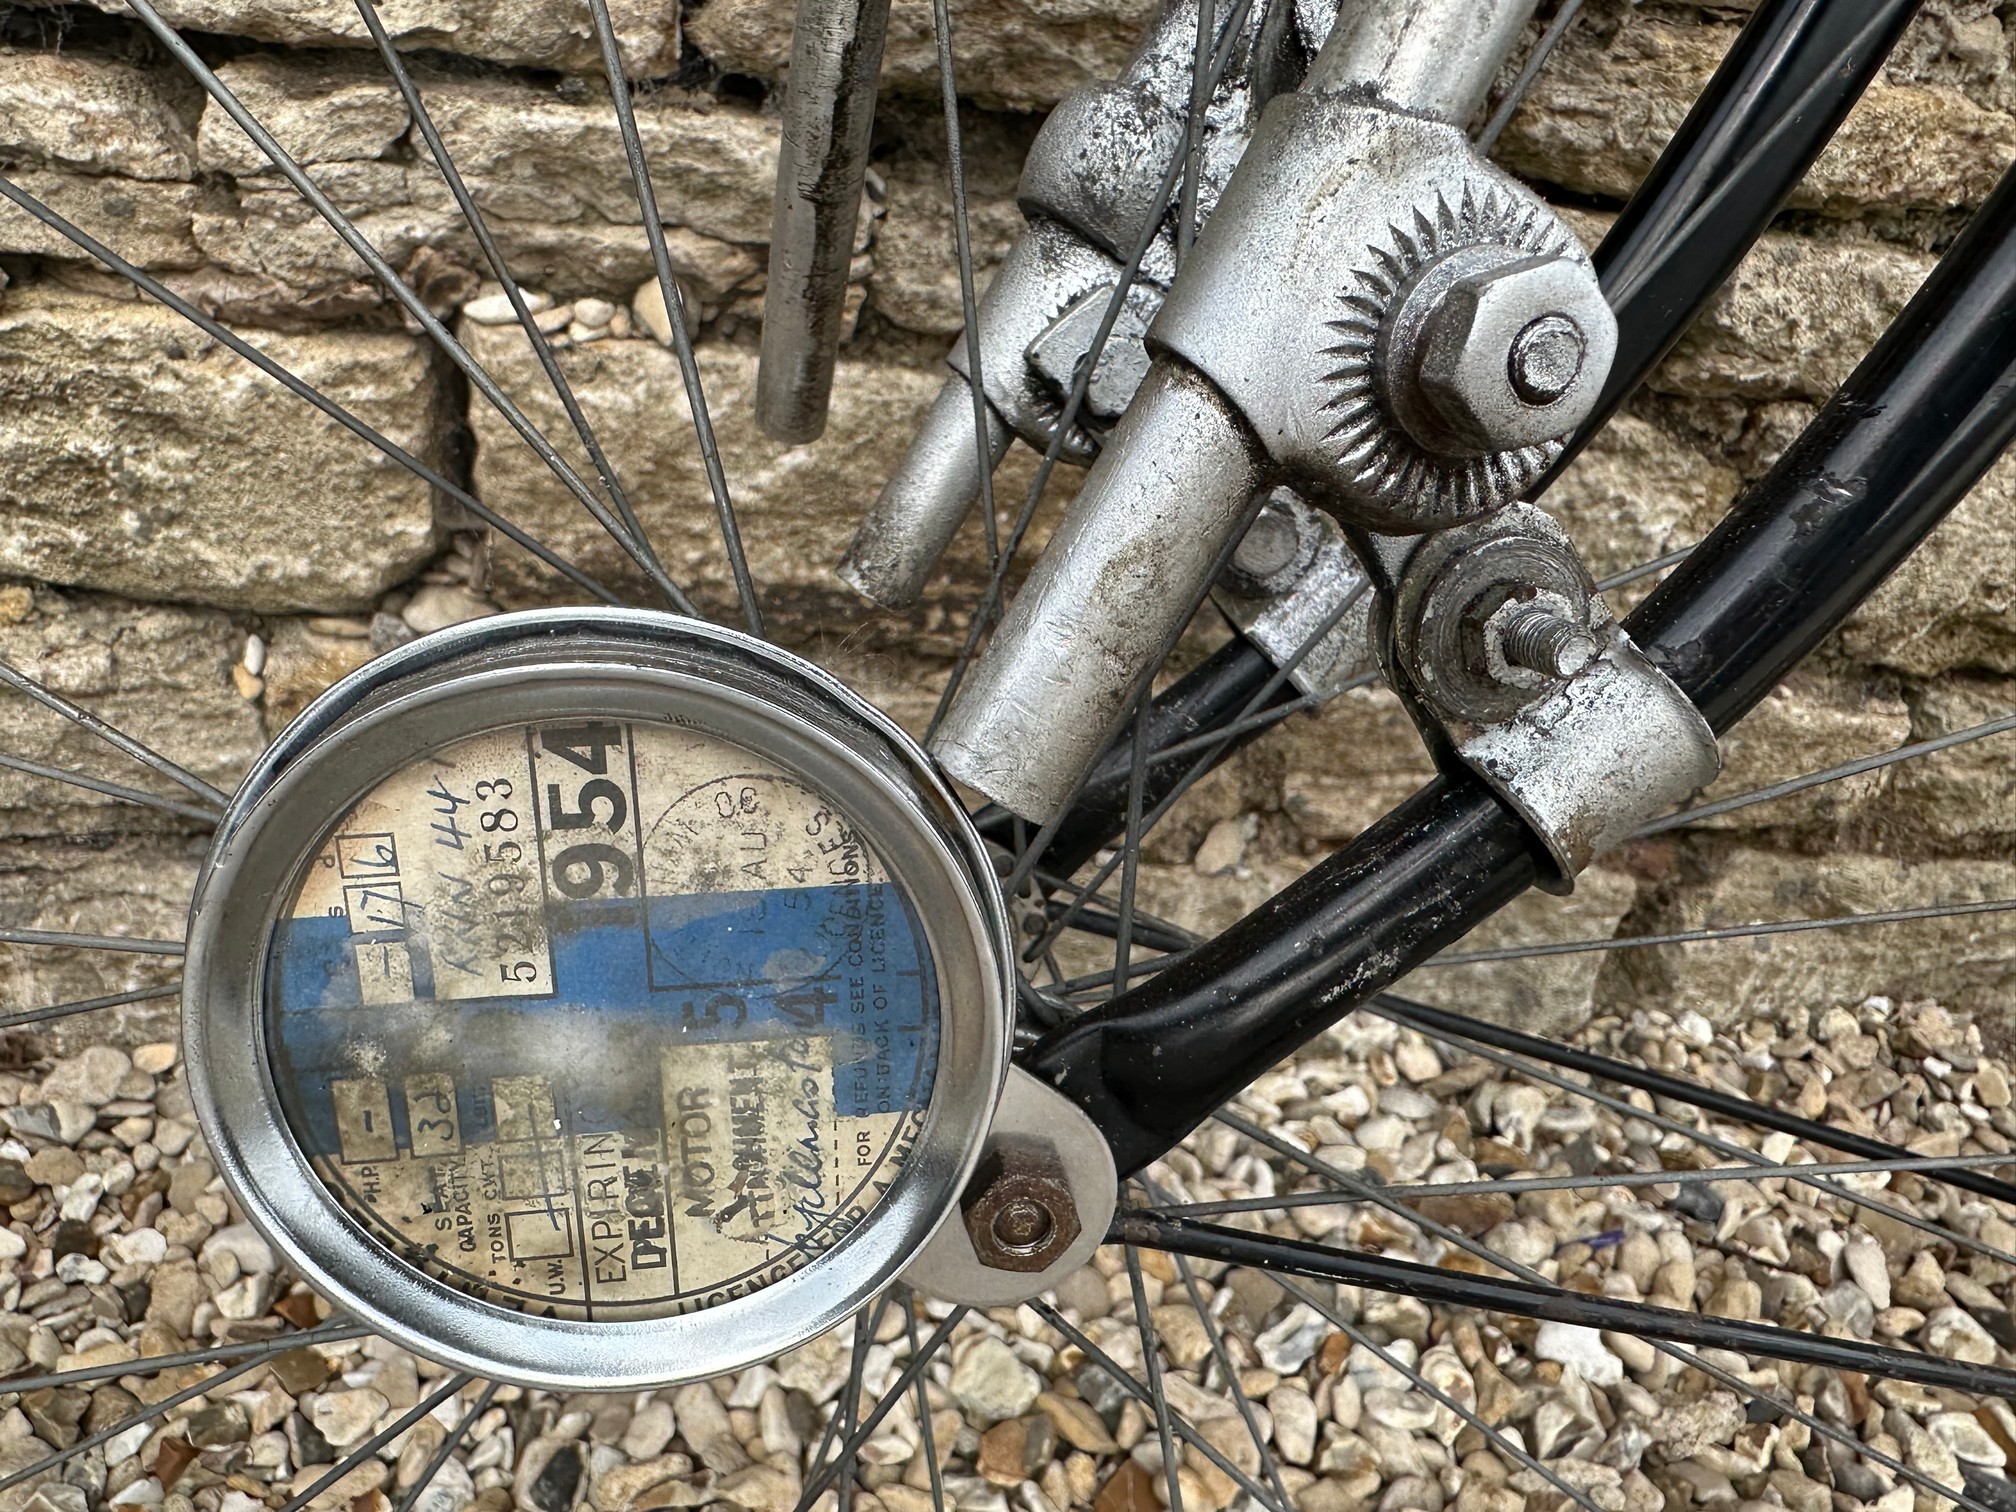 Dawes bicycle with a GYS 49cc engine Reg. no. n/a Frame no. 490 Engine no. - Image 10 of 13